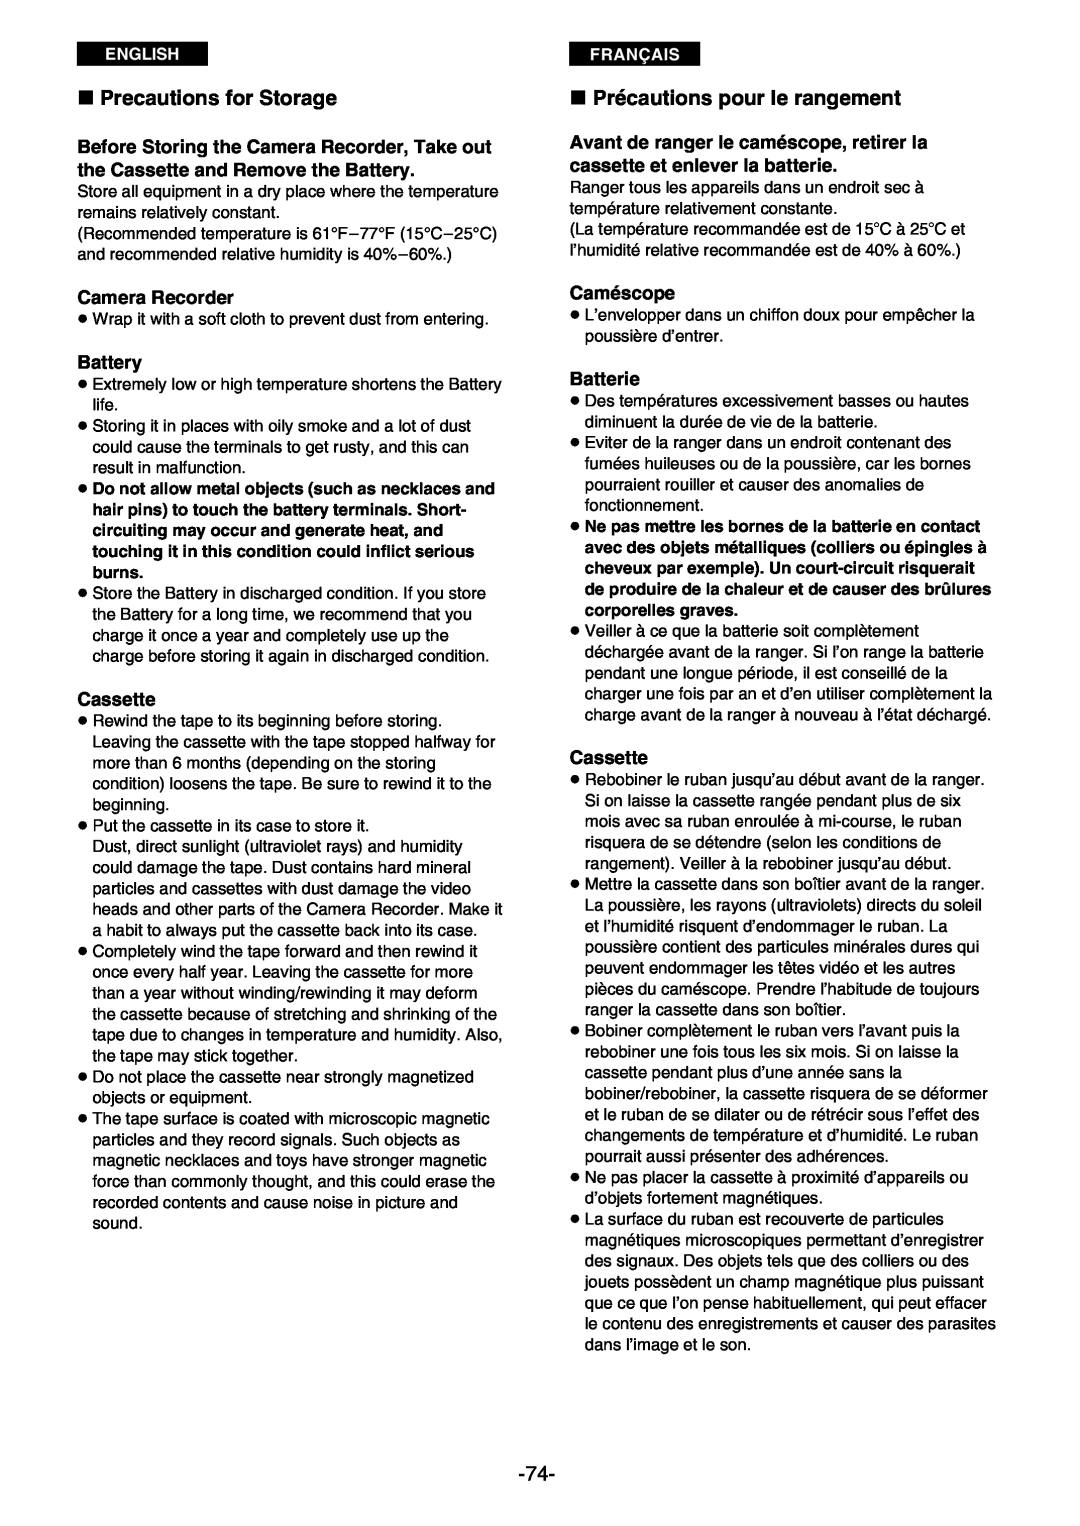 Panasonic AG- DVC 15P manual » Precautions for Storage, » Précautions pour le rangement, Camera Recorder, Battery, Cassette 